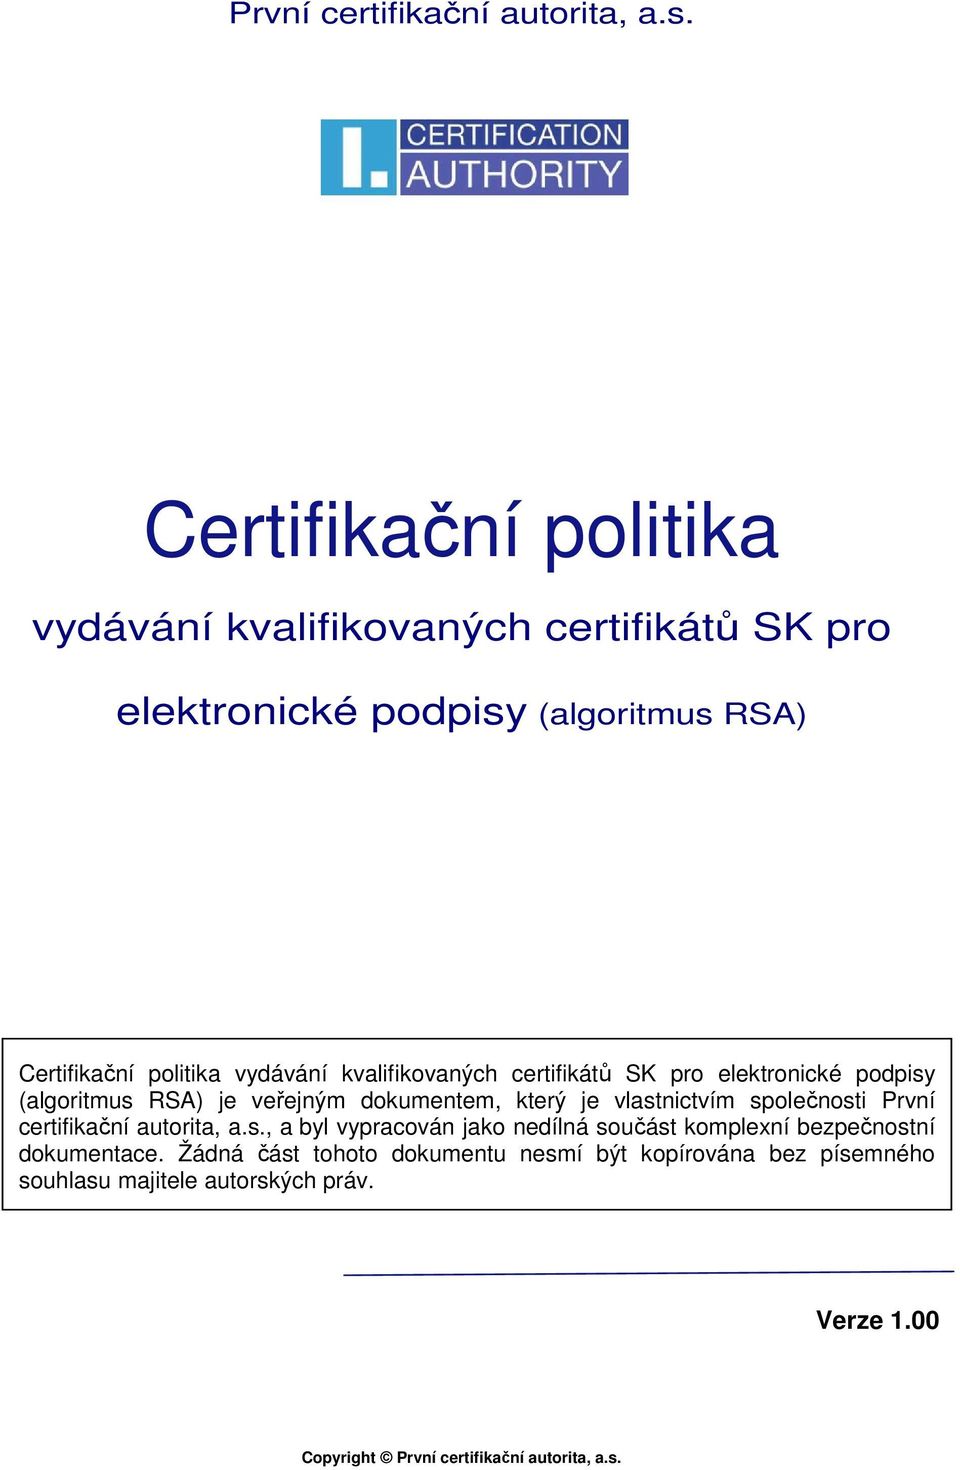 kvalifikovaných certifikátů SK pro elektronické podpisy (algoritmus RSA) je veřejným dokumentem, který je vlastnictvím společnosti , a byl